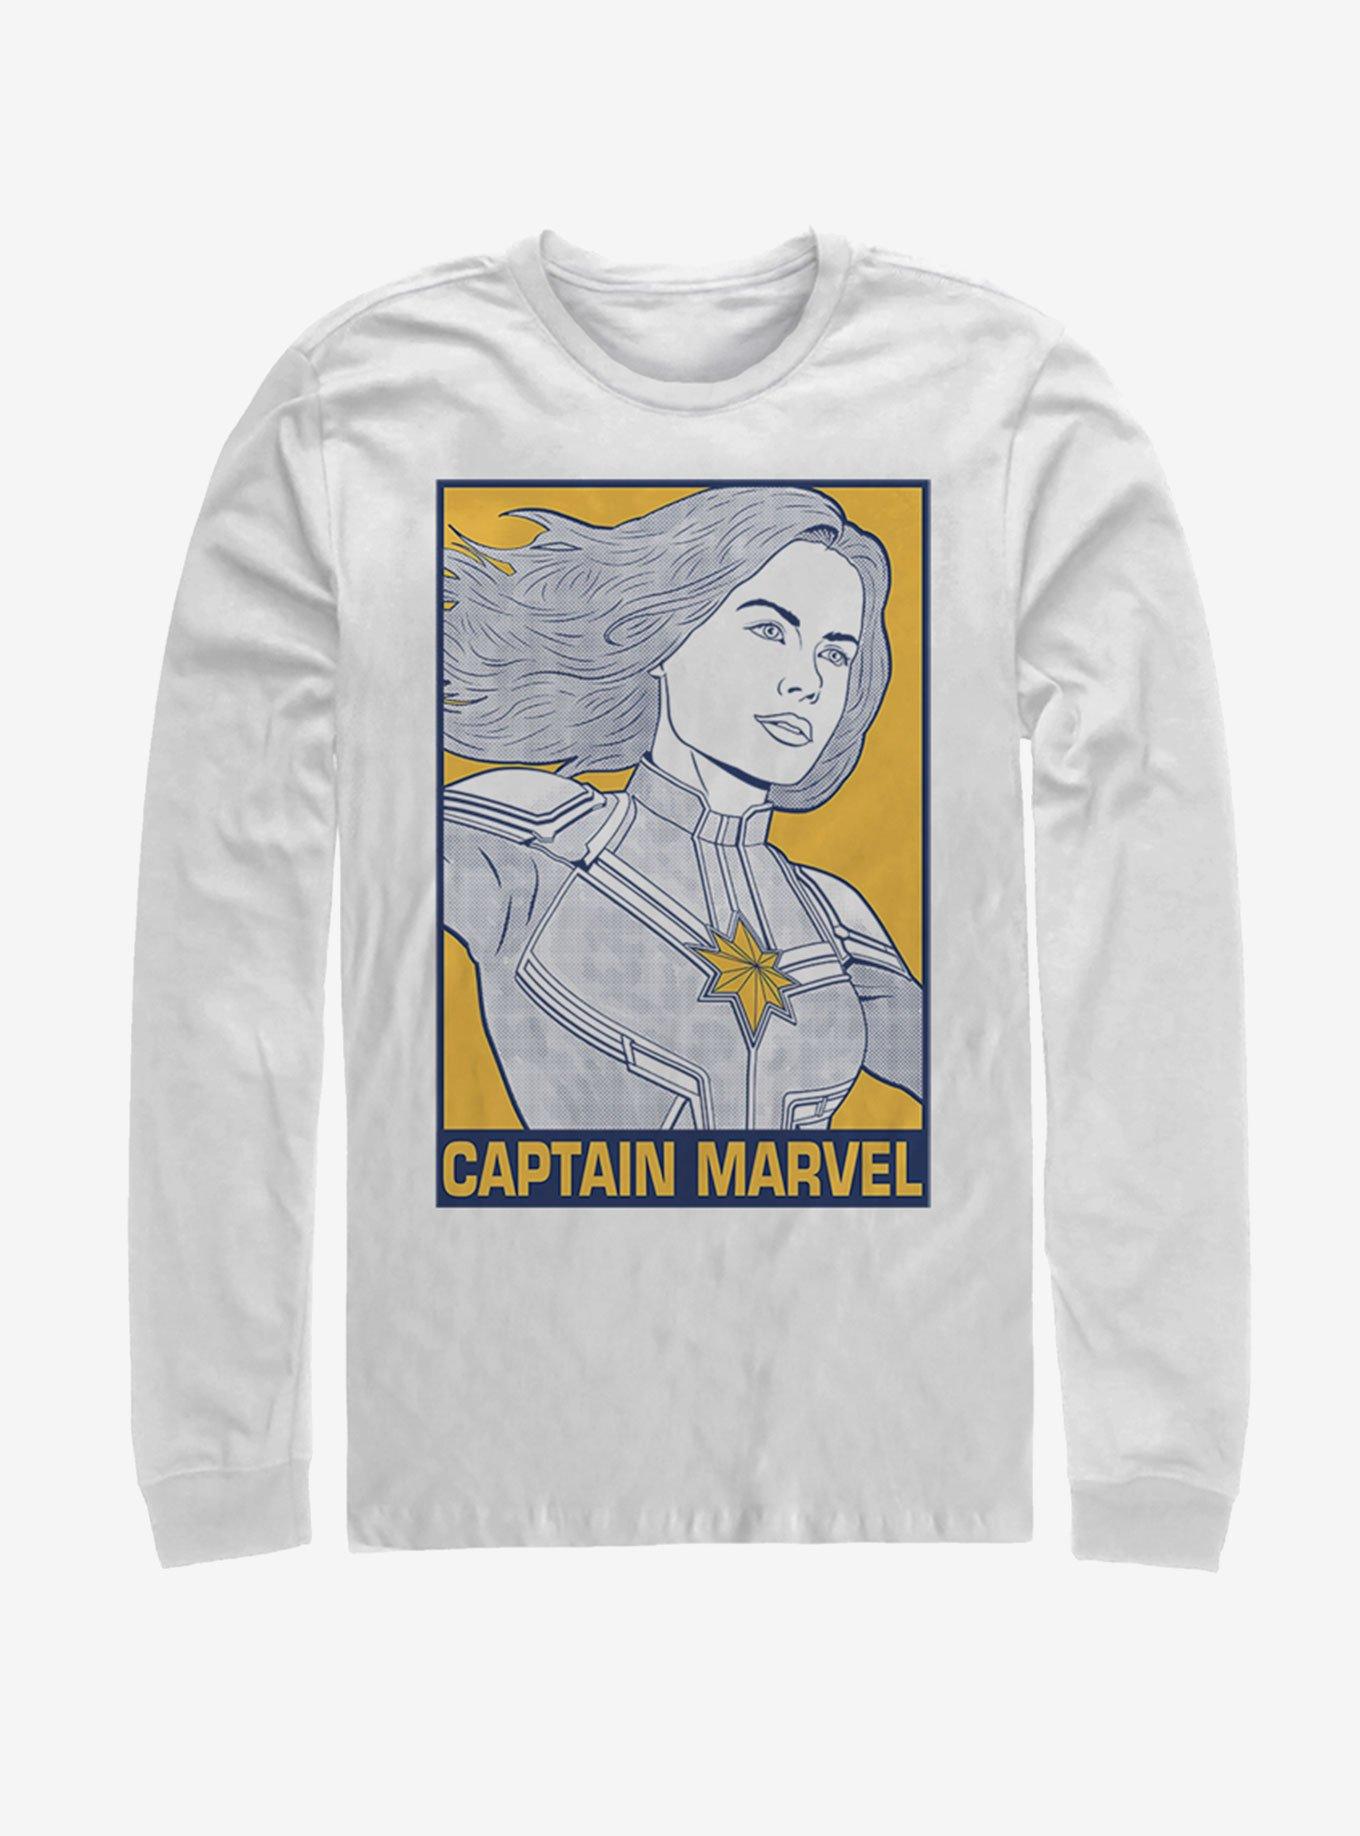 Marvel Avengers: Endgame Pop Captain Marvel Long Sleeve T-Shirt, , hi-res